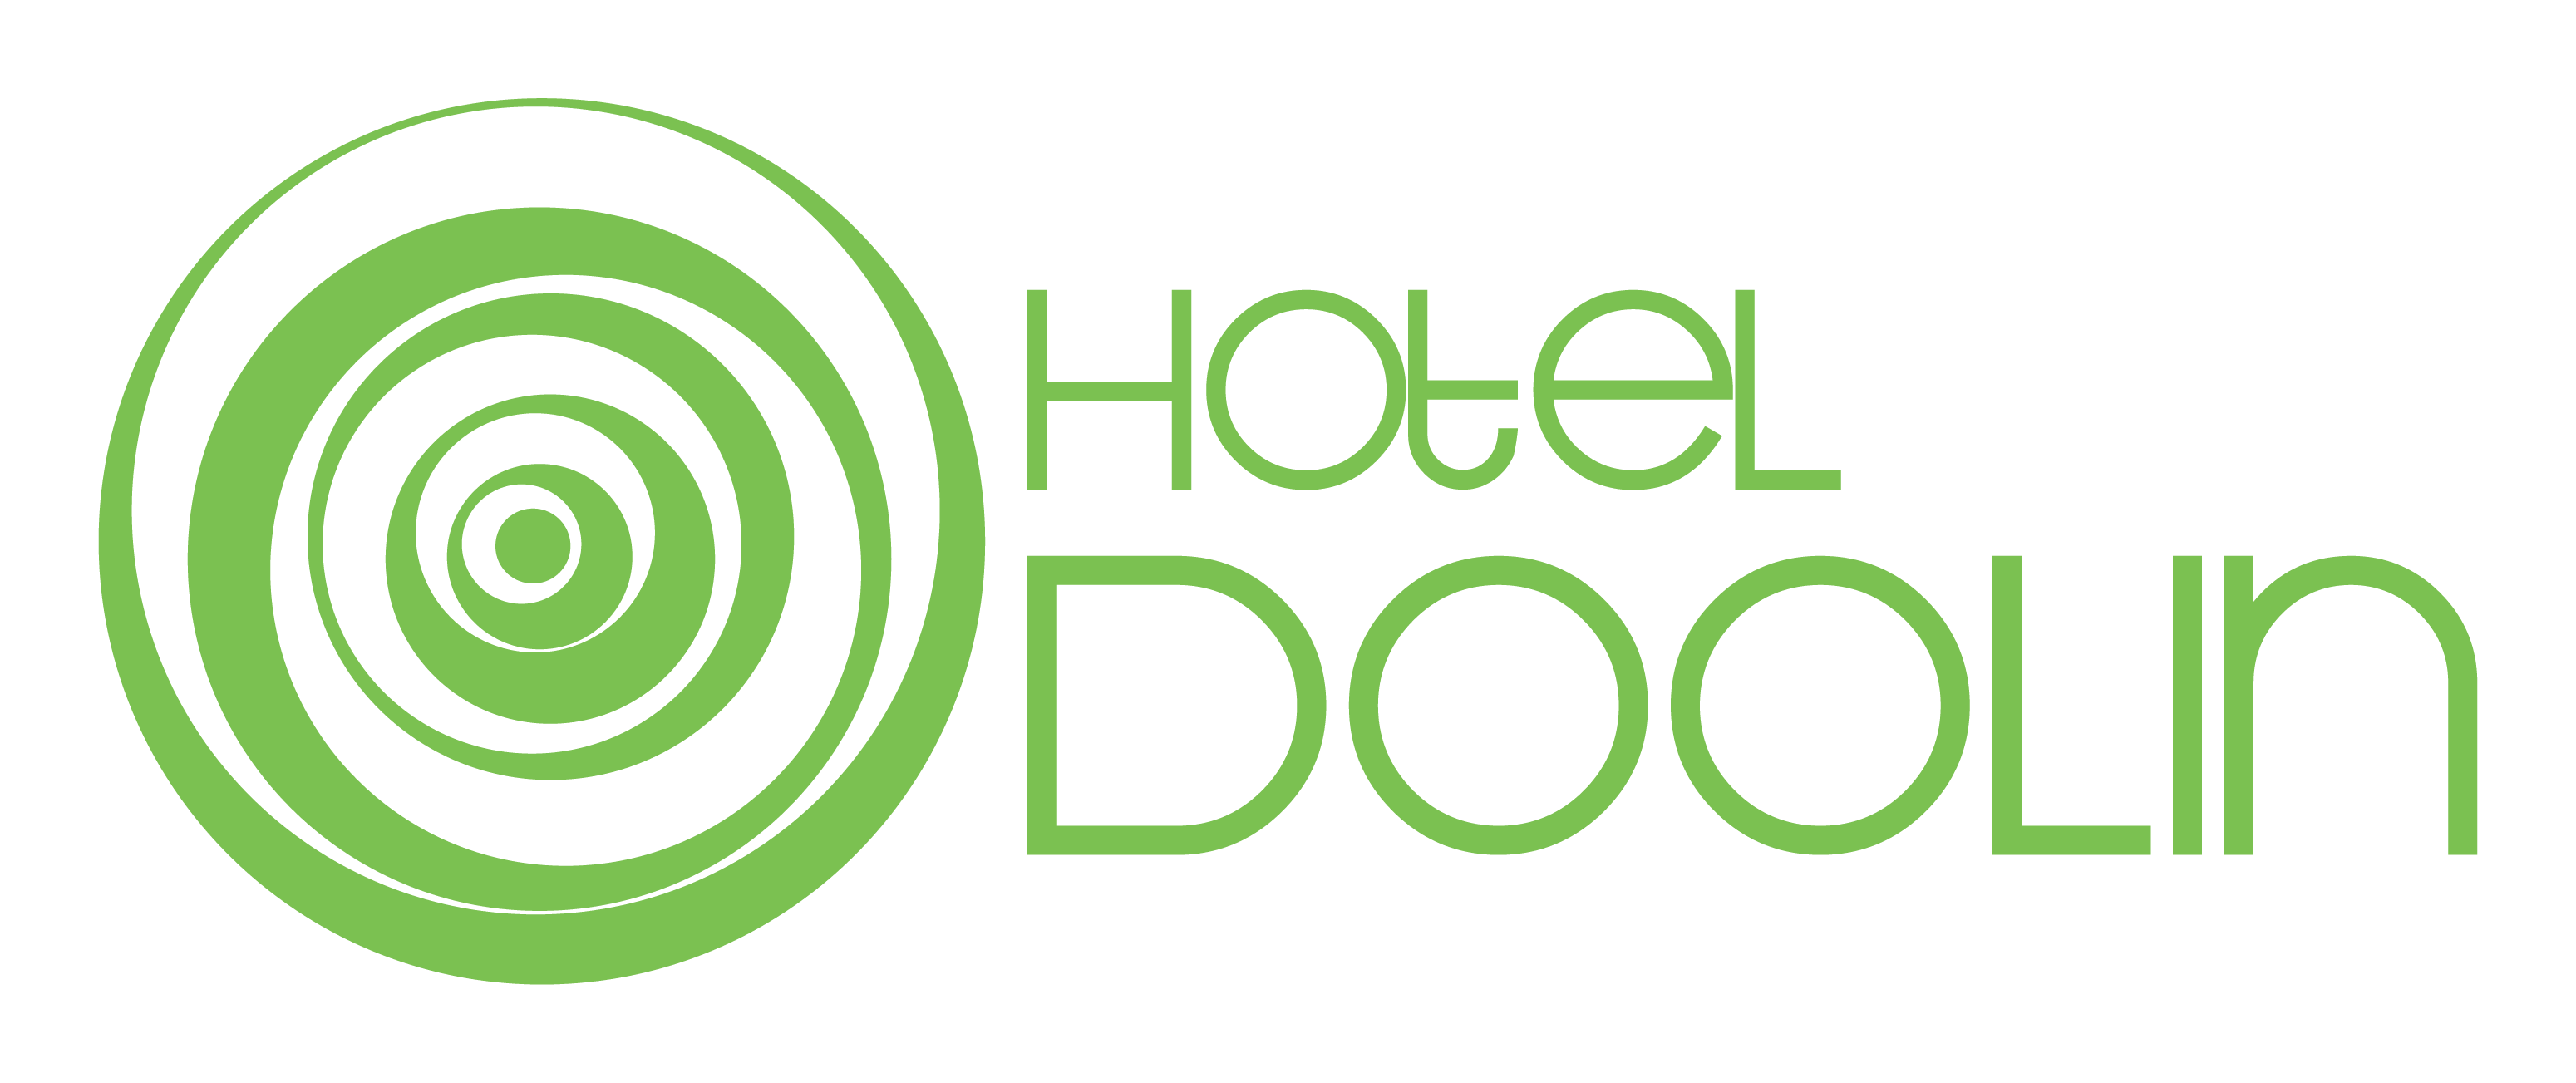 Hotel Doolin